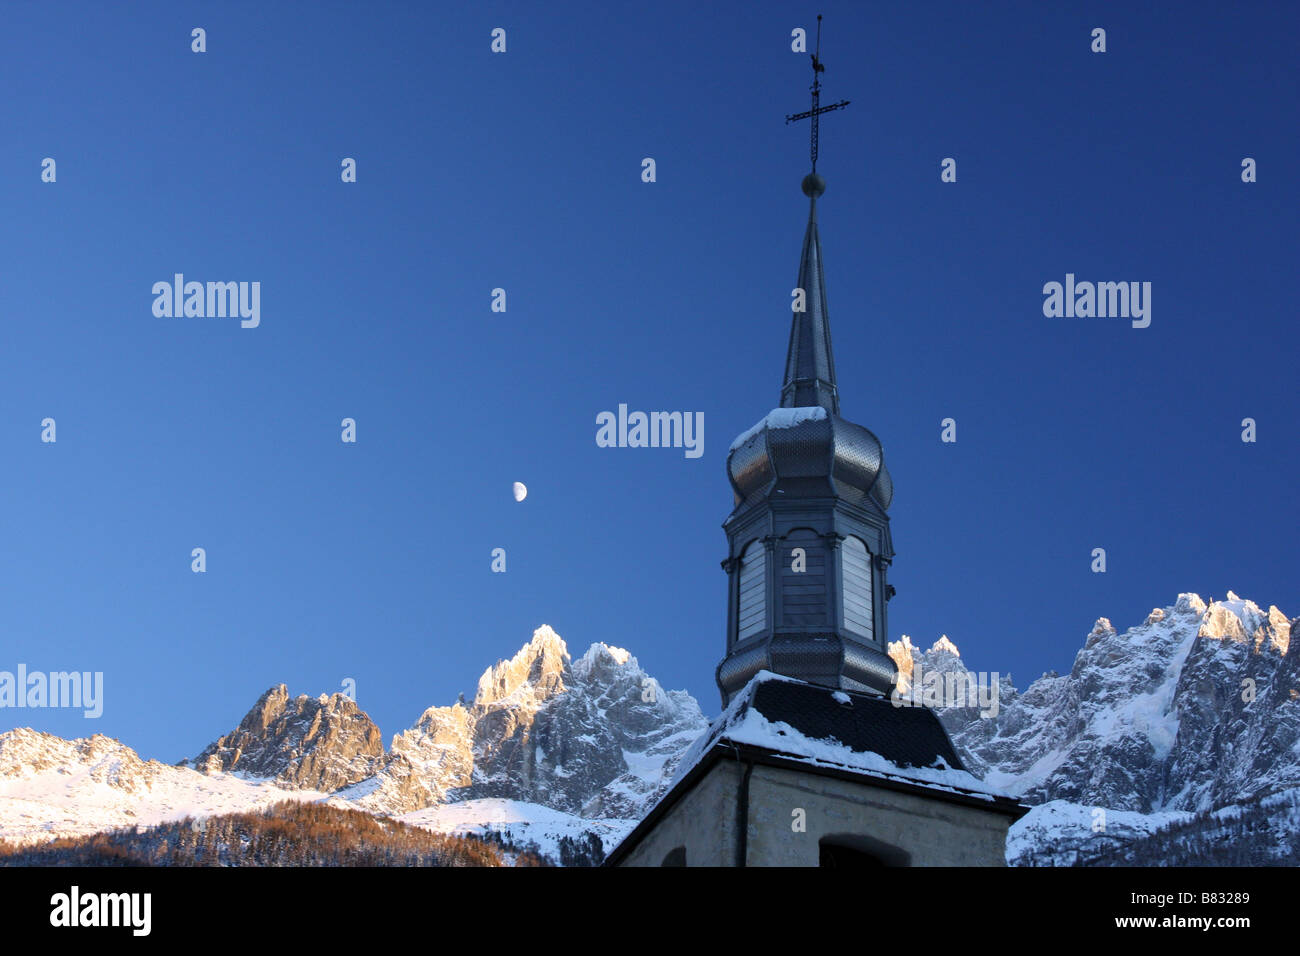 Campanile ricoperta di neve con sullo sfondo le Alpi, Chamonix Mont Blanc, Francia Foto Stock